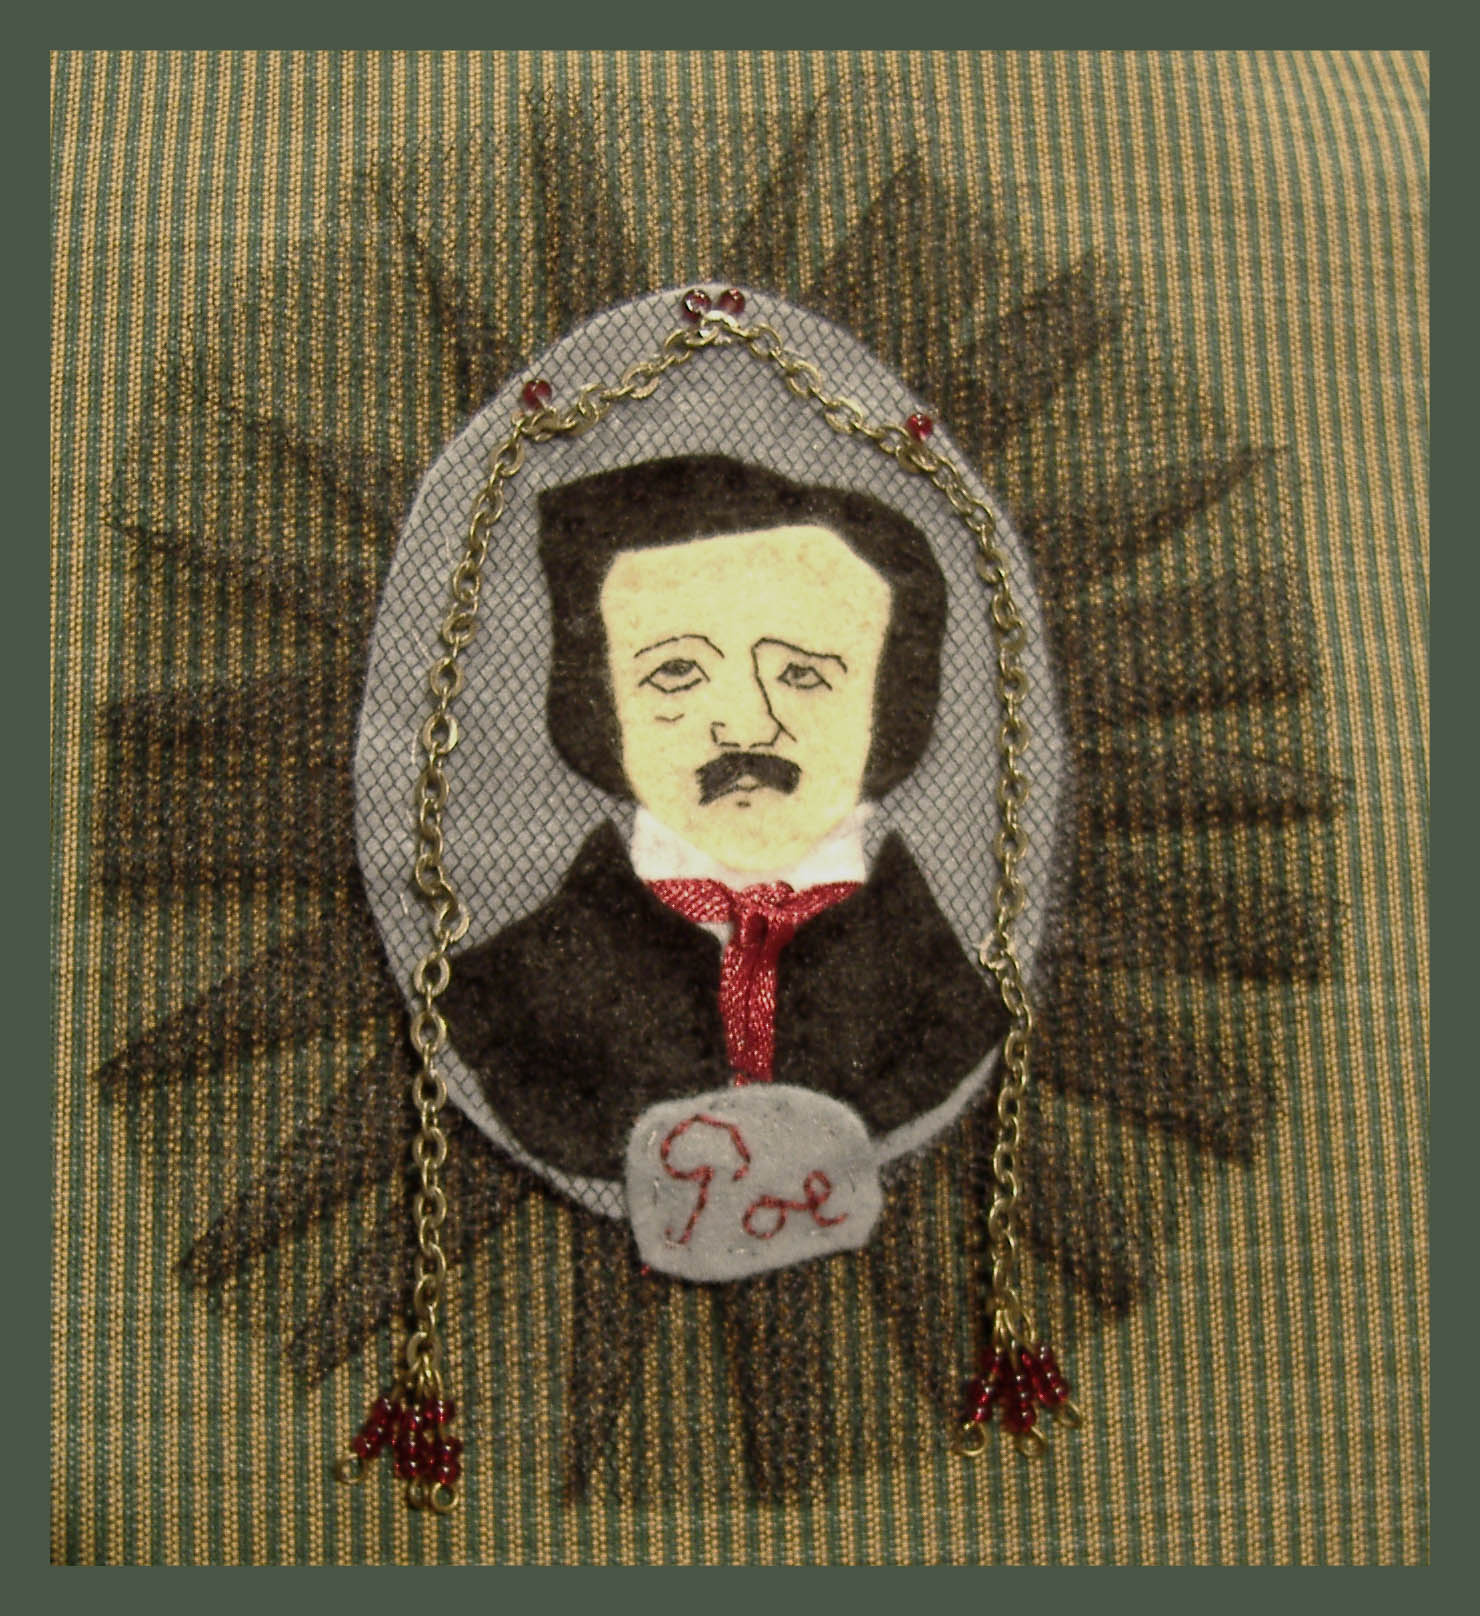 Edgar Allan Poe brooch